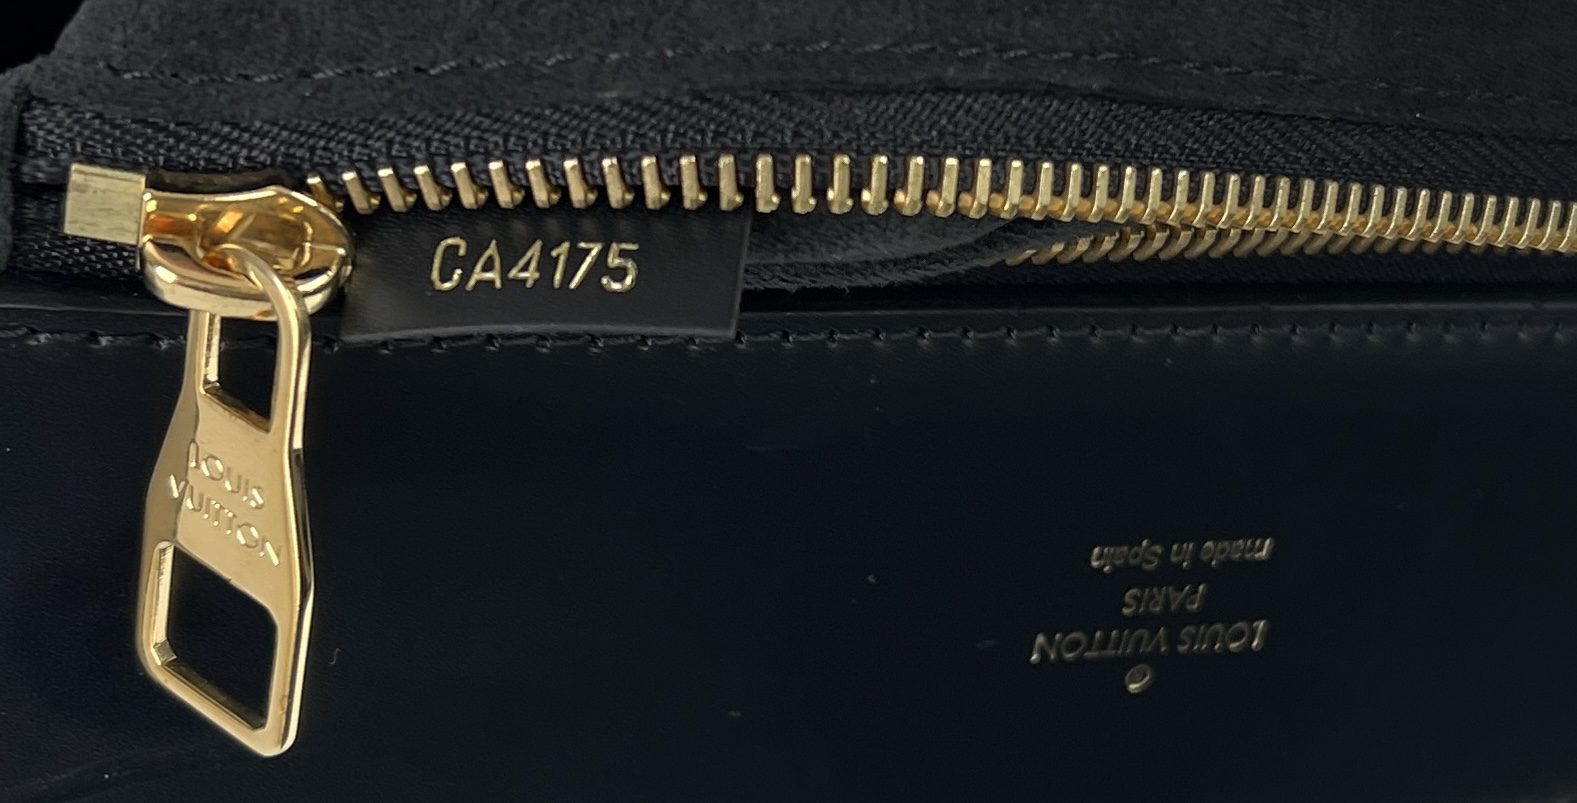 Louis Vuitton Noir Monogram Canvas Phenix PM Bag at 1stDibs  louis vuitton  phenix pm, louis vuitton phenix bag, lv phenix pm